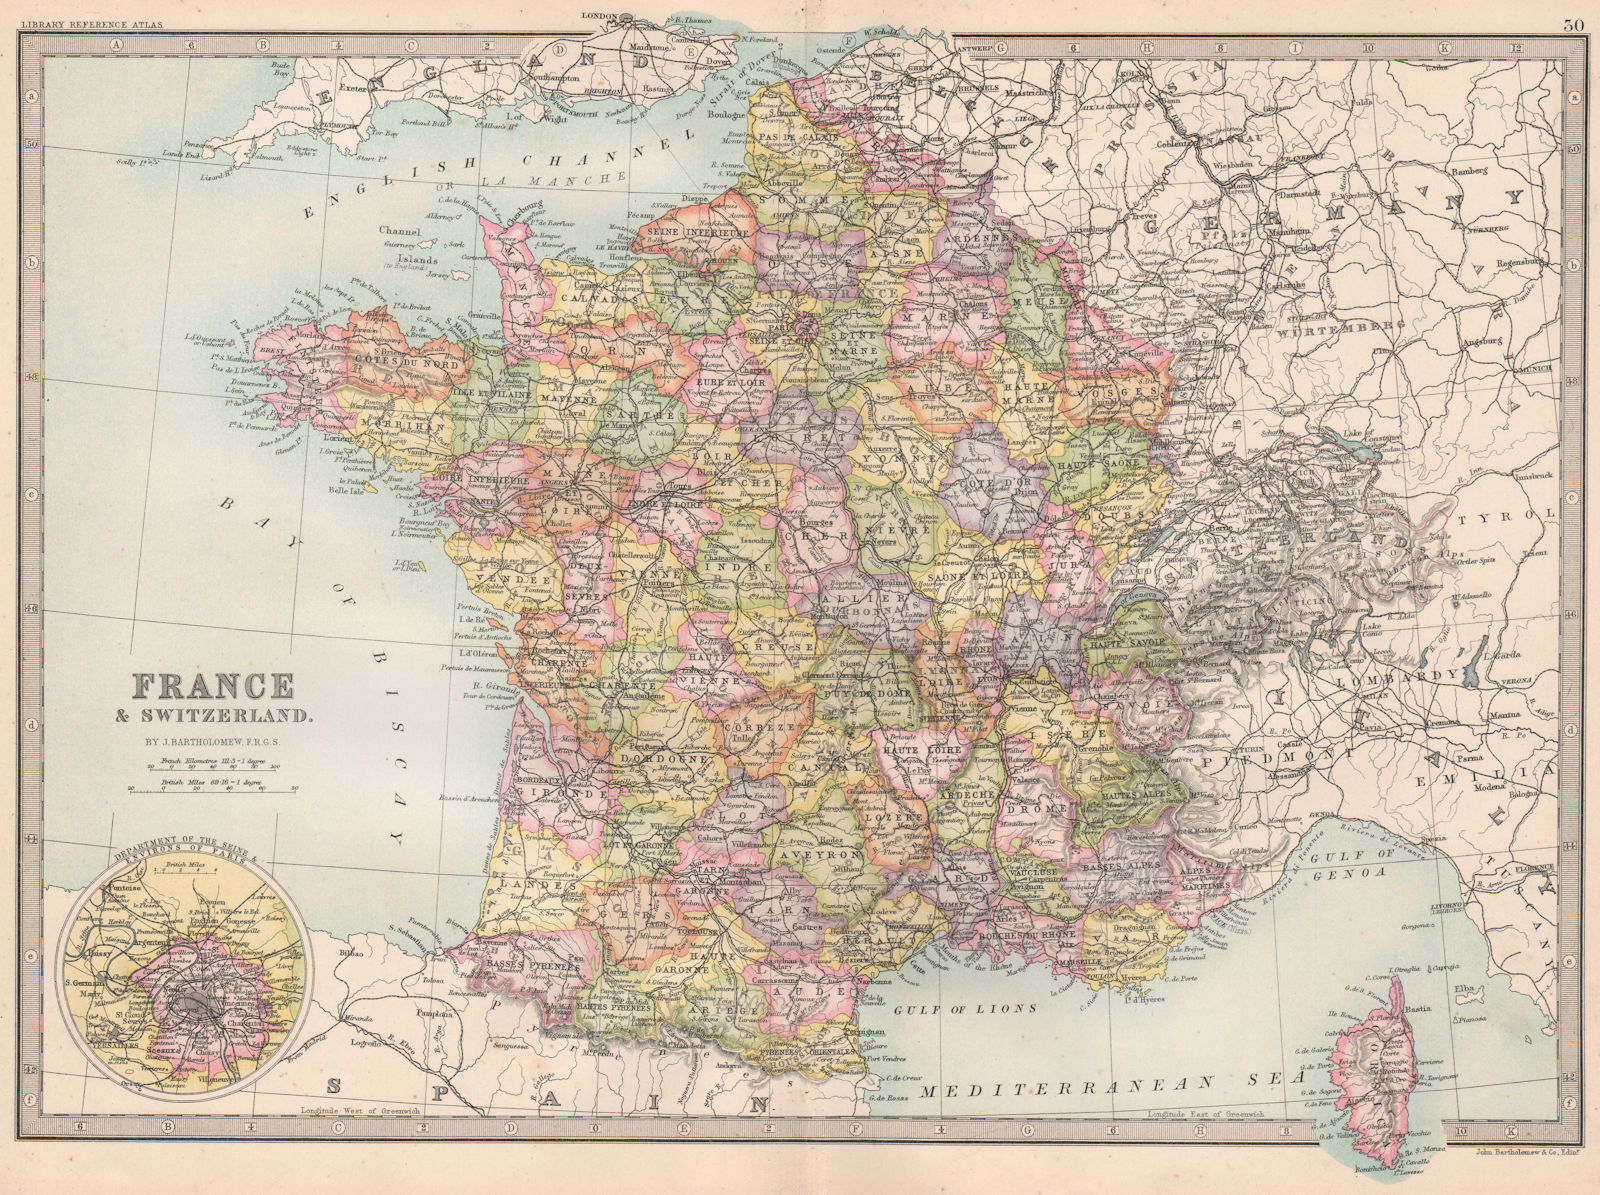 FRANCE & SWITZERLAND. without Alsace Lorraine. BARTHOLOMEW 1890 old map